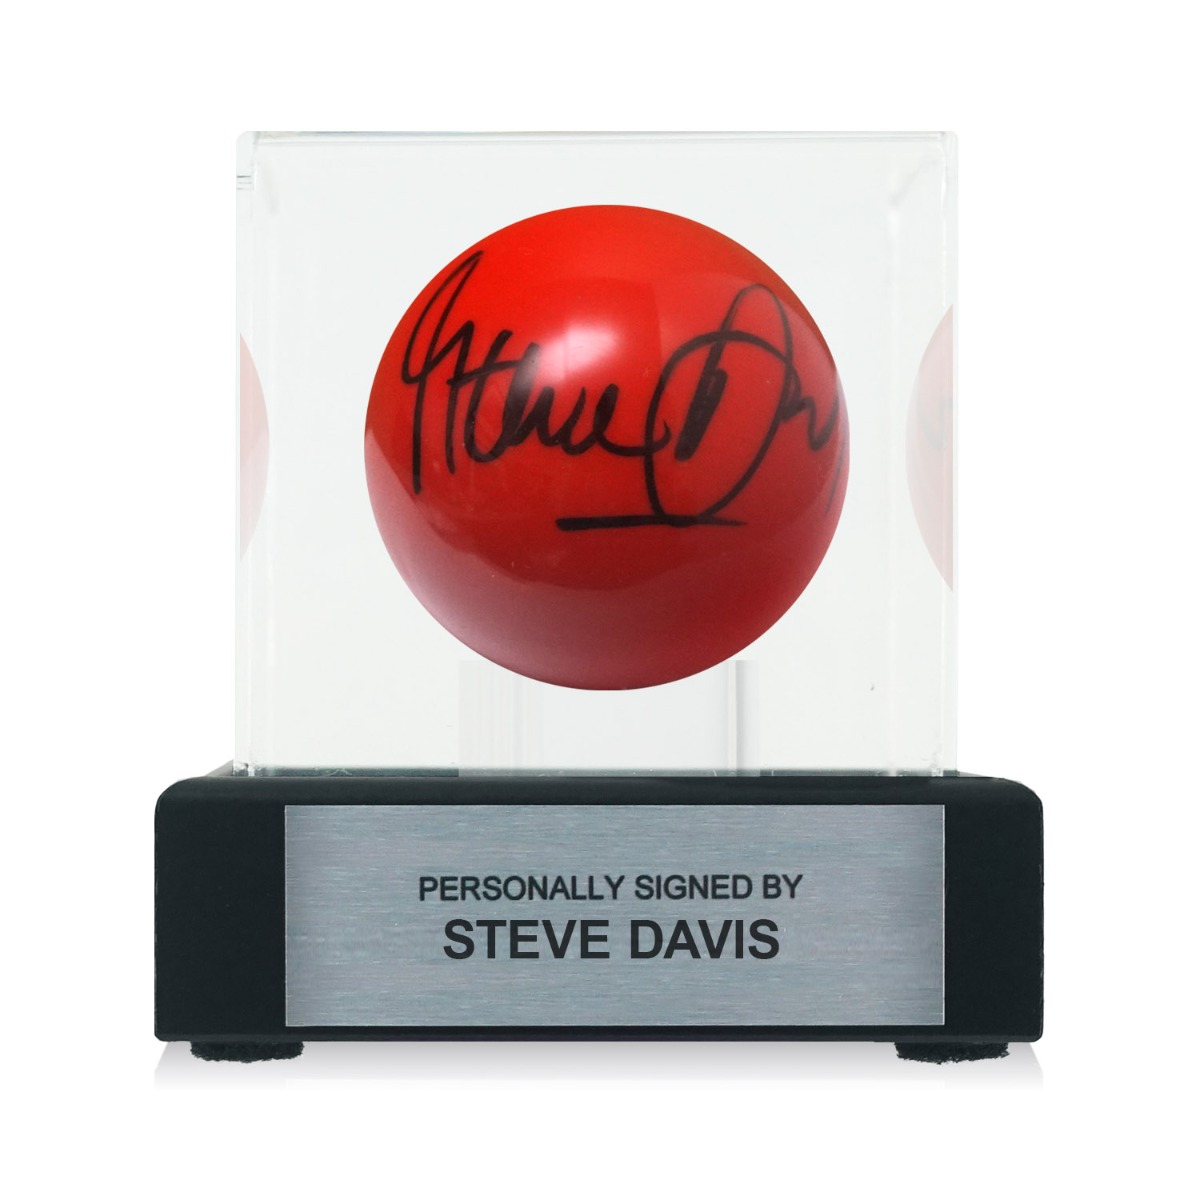 Steve Davis Hand Signed Red Snooker Ball 